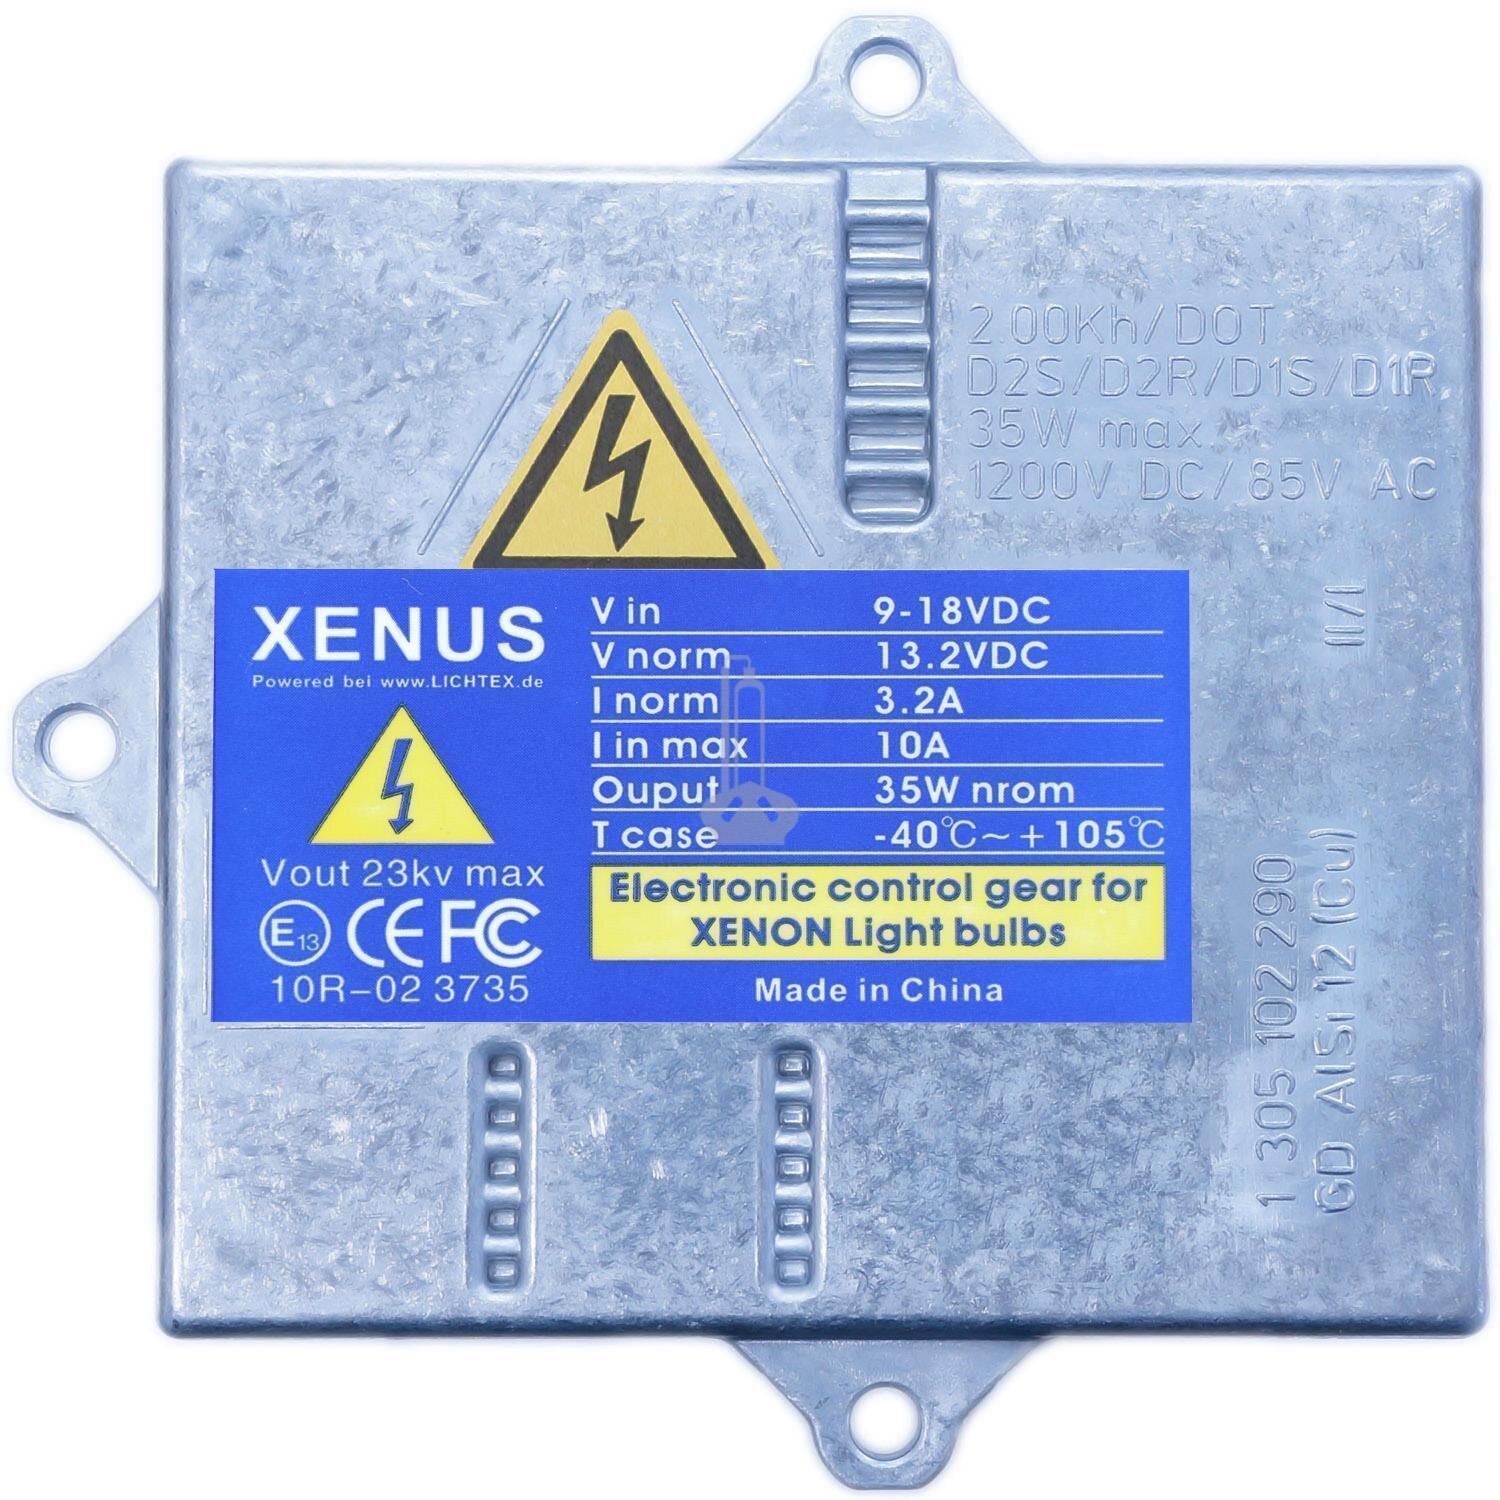 XENUS D1S Xenon Scheinwerfer Steuergerät Ersatz für OSRAM 831-10009-044 NEW  35W